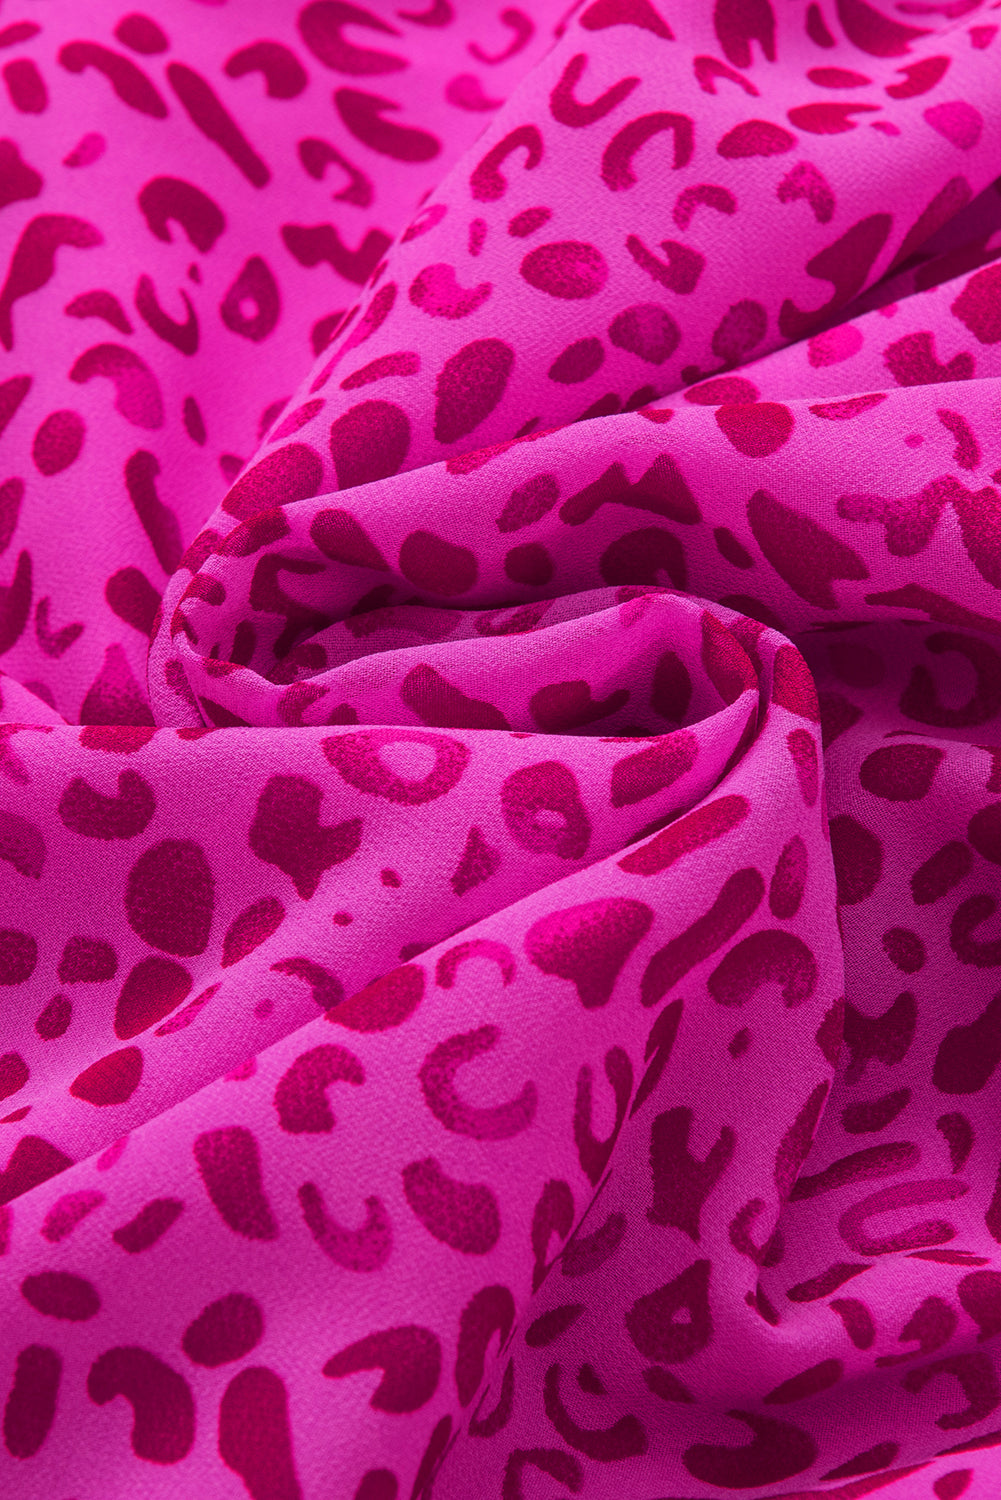 Lepršava bluza s puf rukavima i ružičastim leopardom